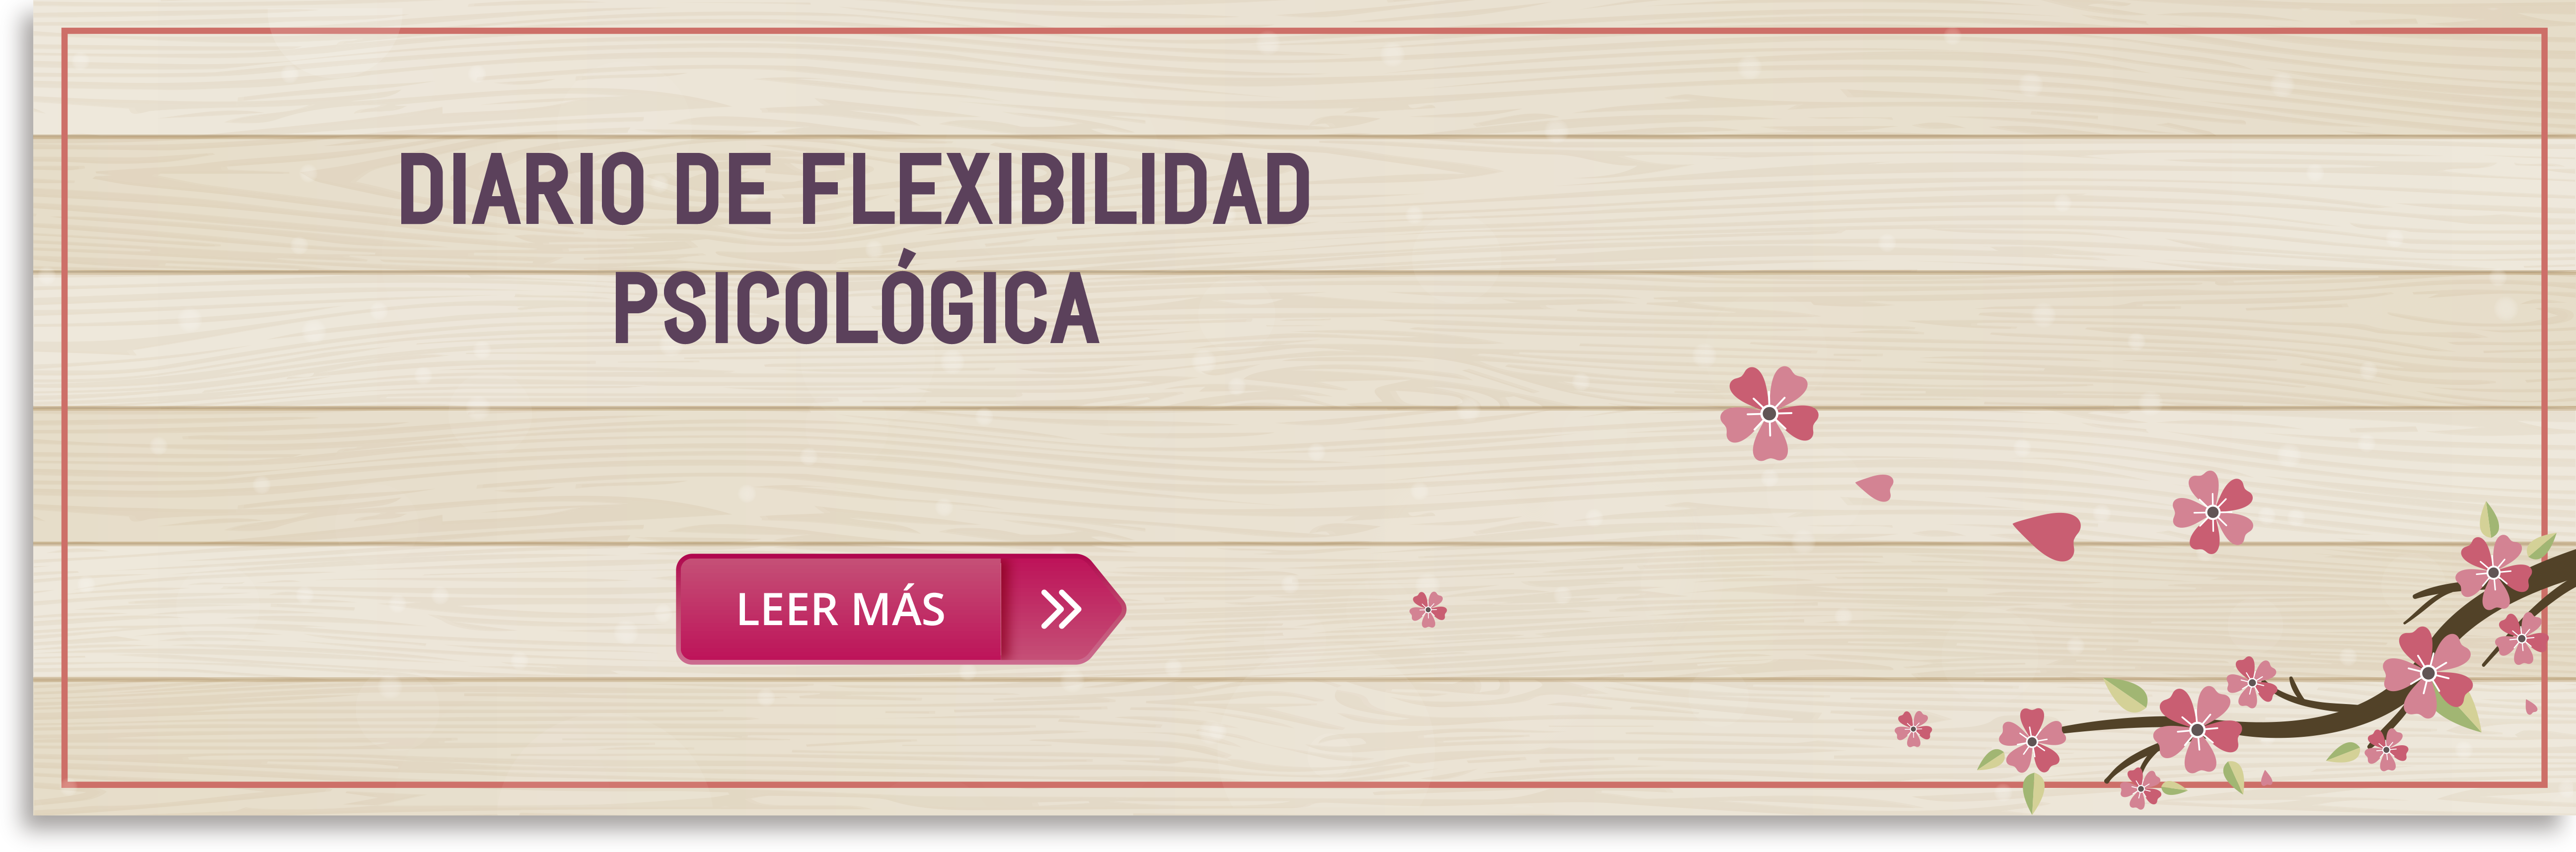 diario_flexibilidad_psicologica.png